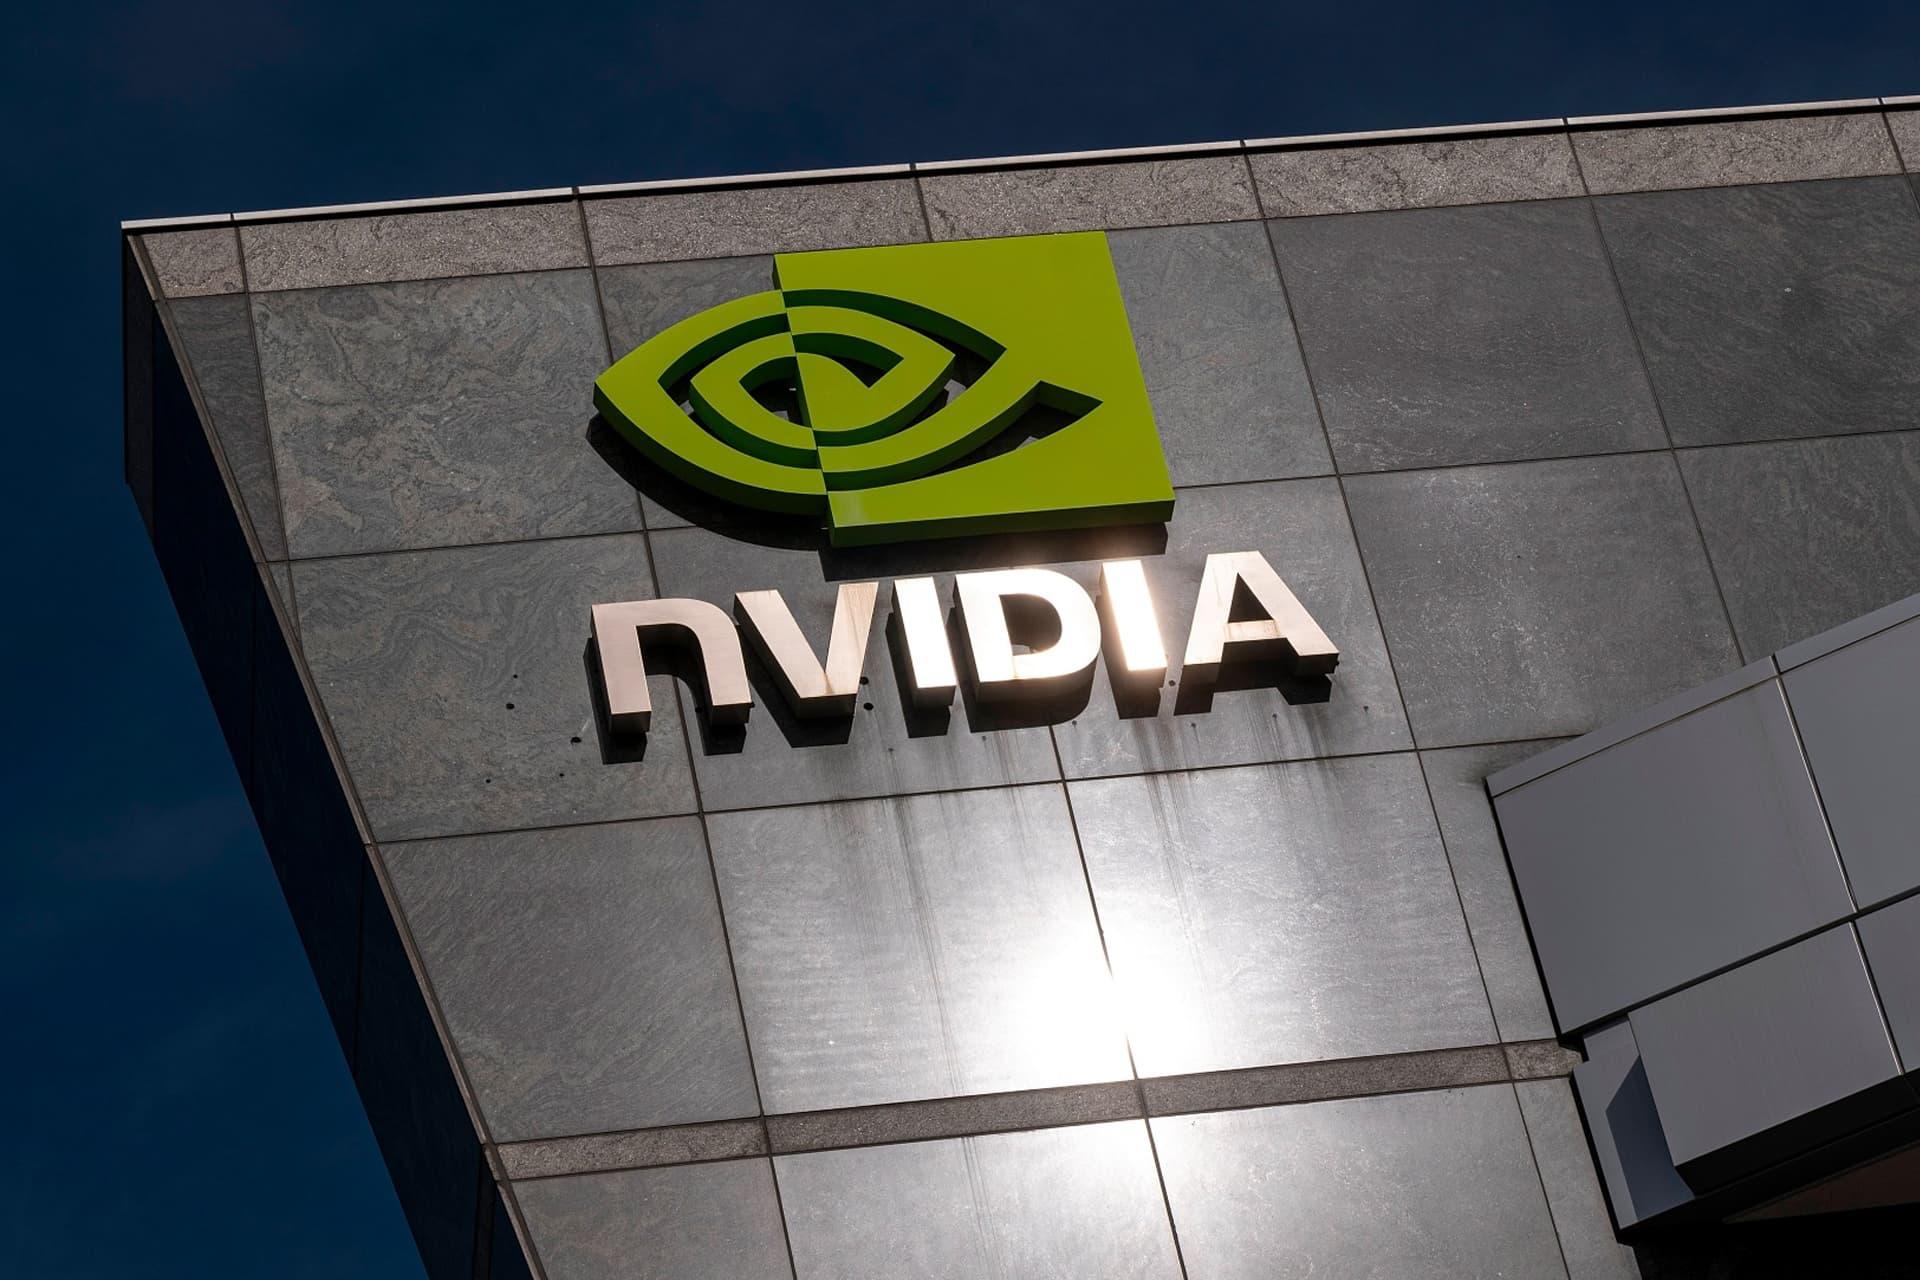 لوگو انویدیا Nvidia روی ساختمان آسمان آبی